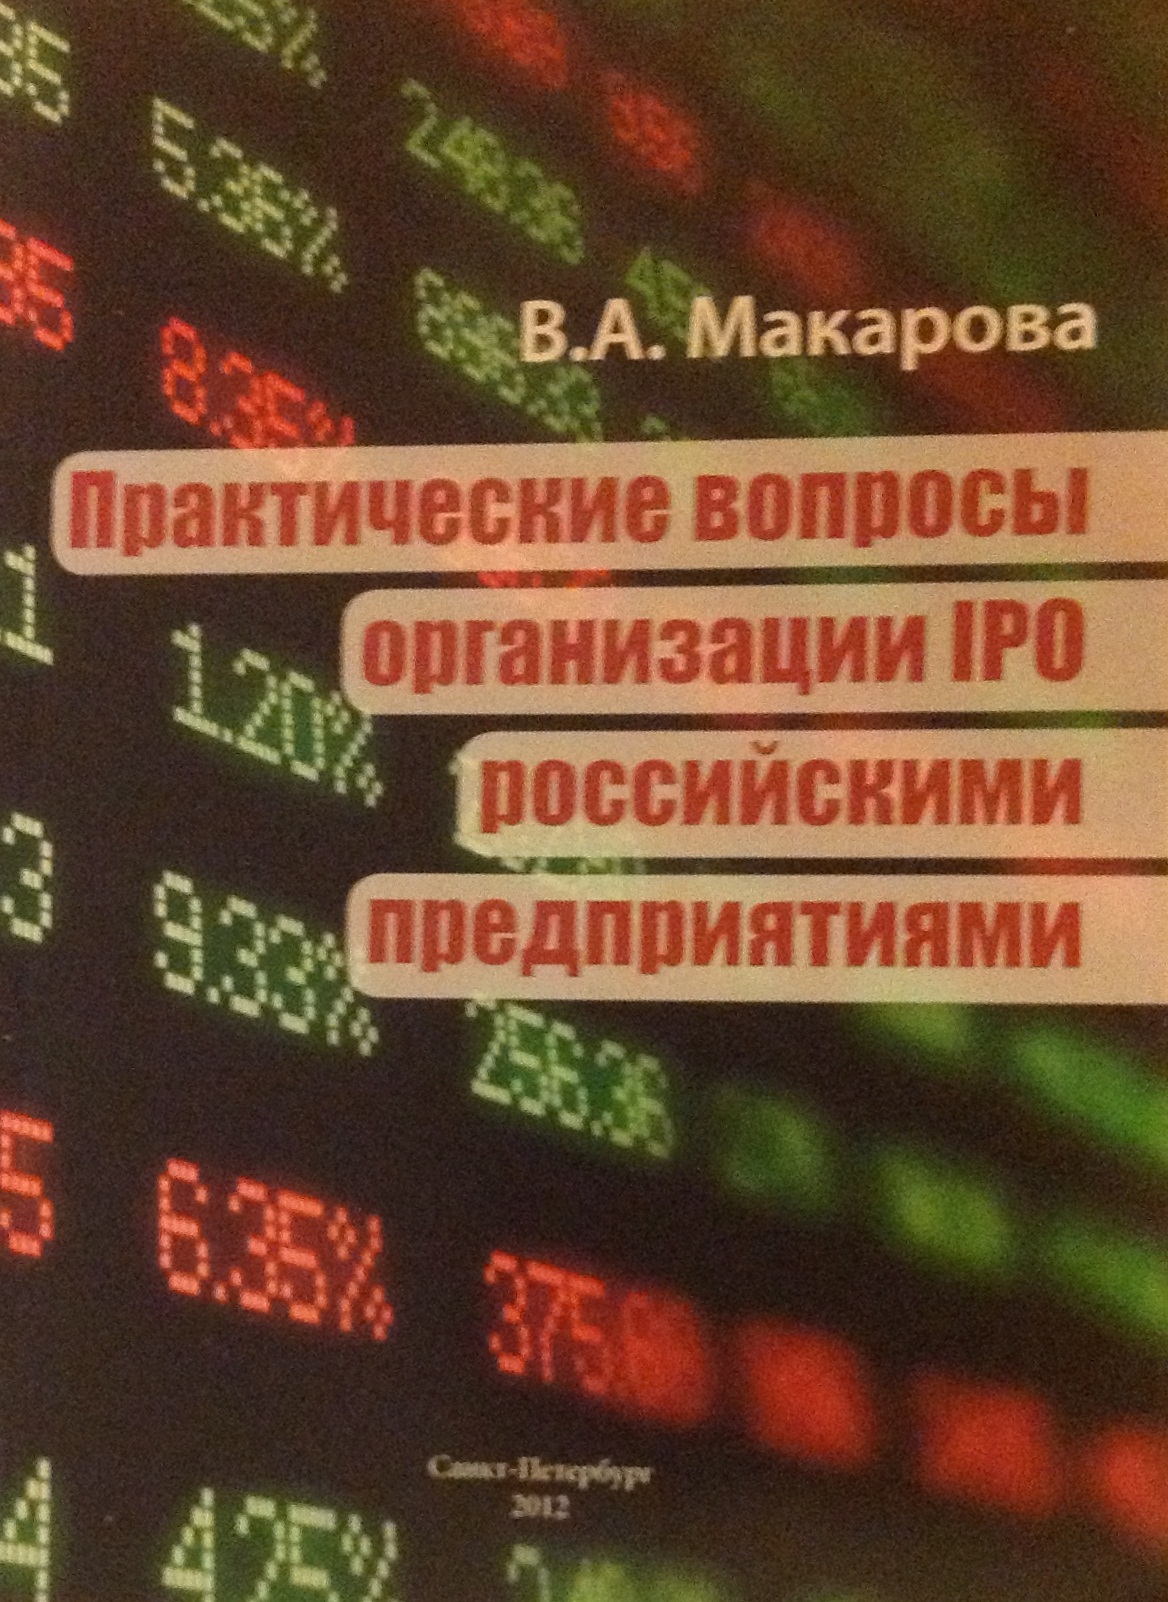 Практические вопросы организации IPO российскими предприятиями